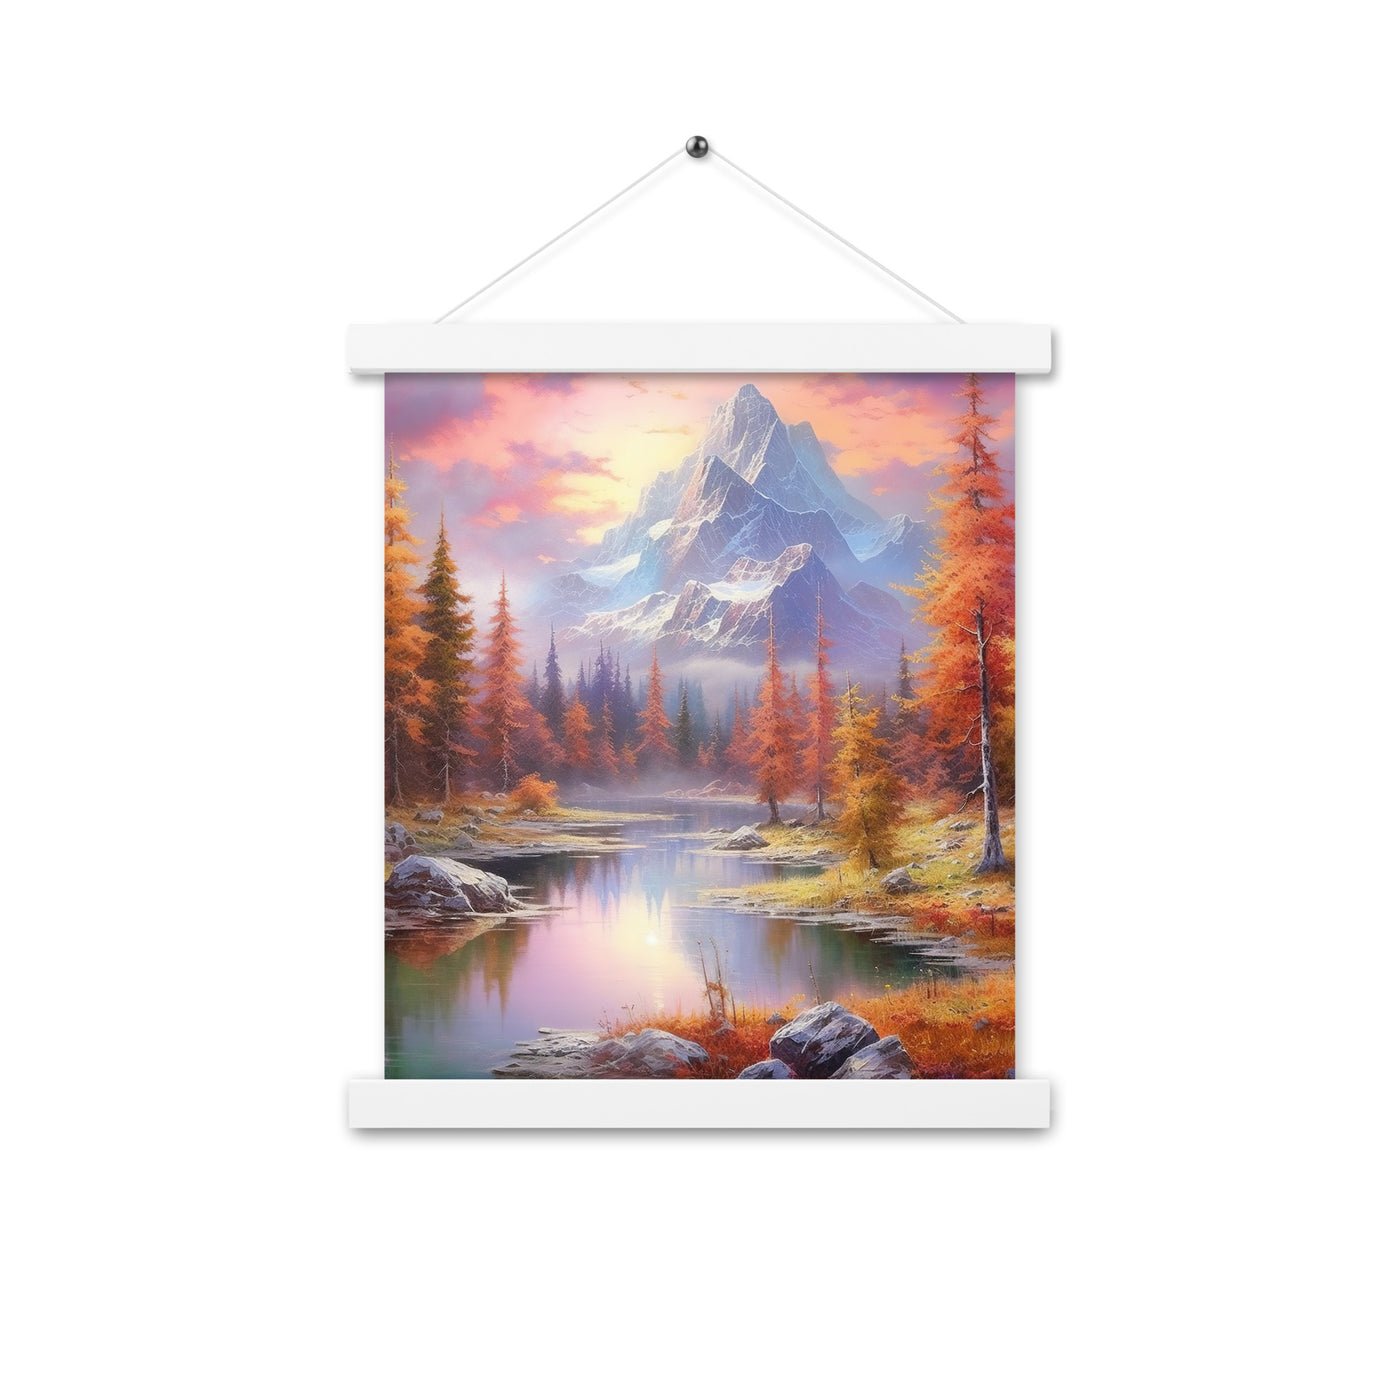 Landschaftsmalerei - Berge, Bäume, Bergsee und Herbstfarben - Premium Poster mit Aufhängung berge xxx 27.9 x 35.6 cm